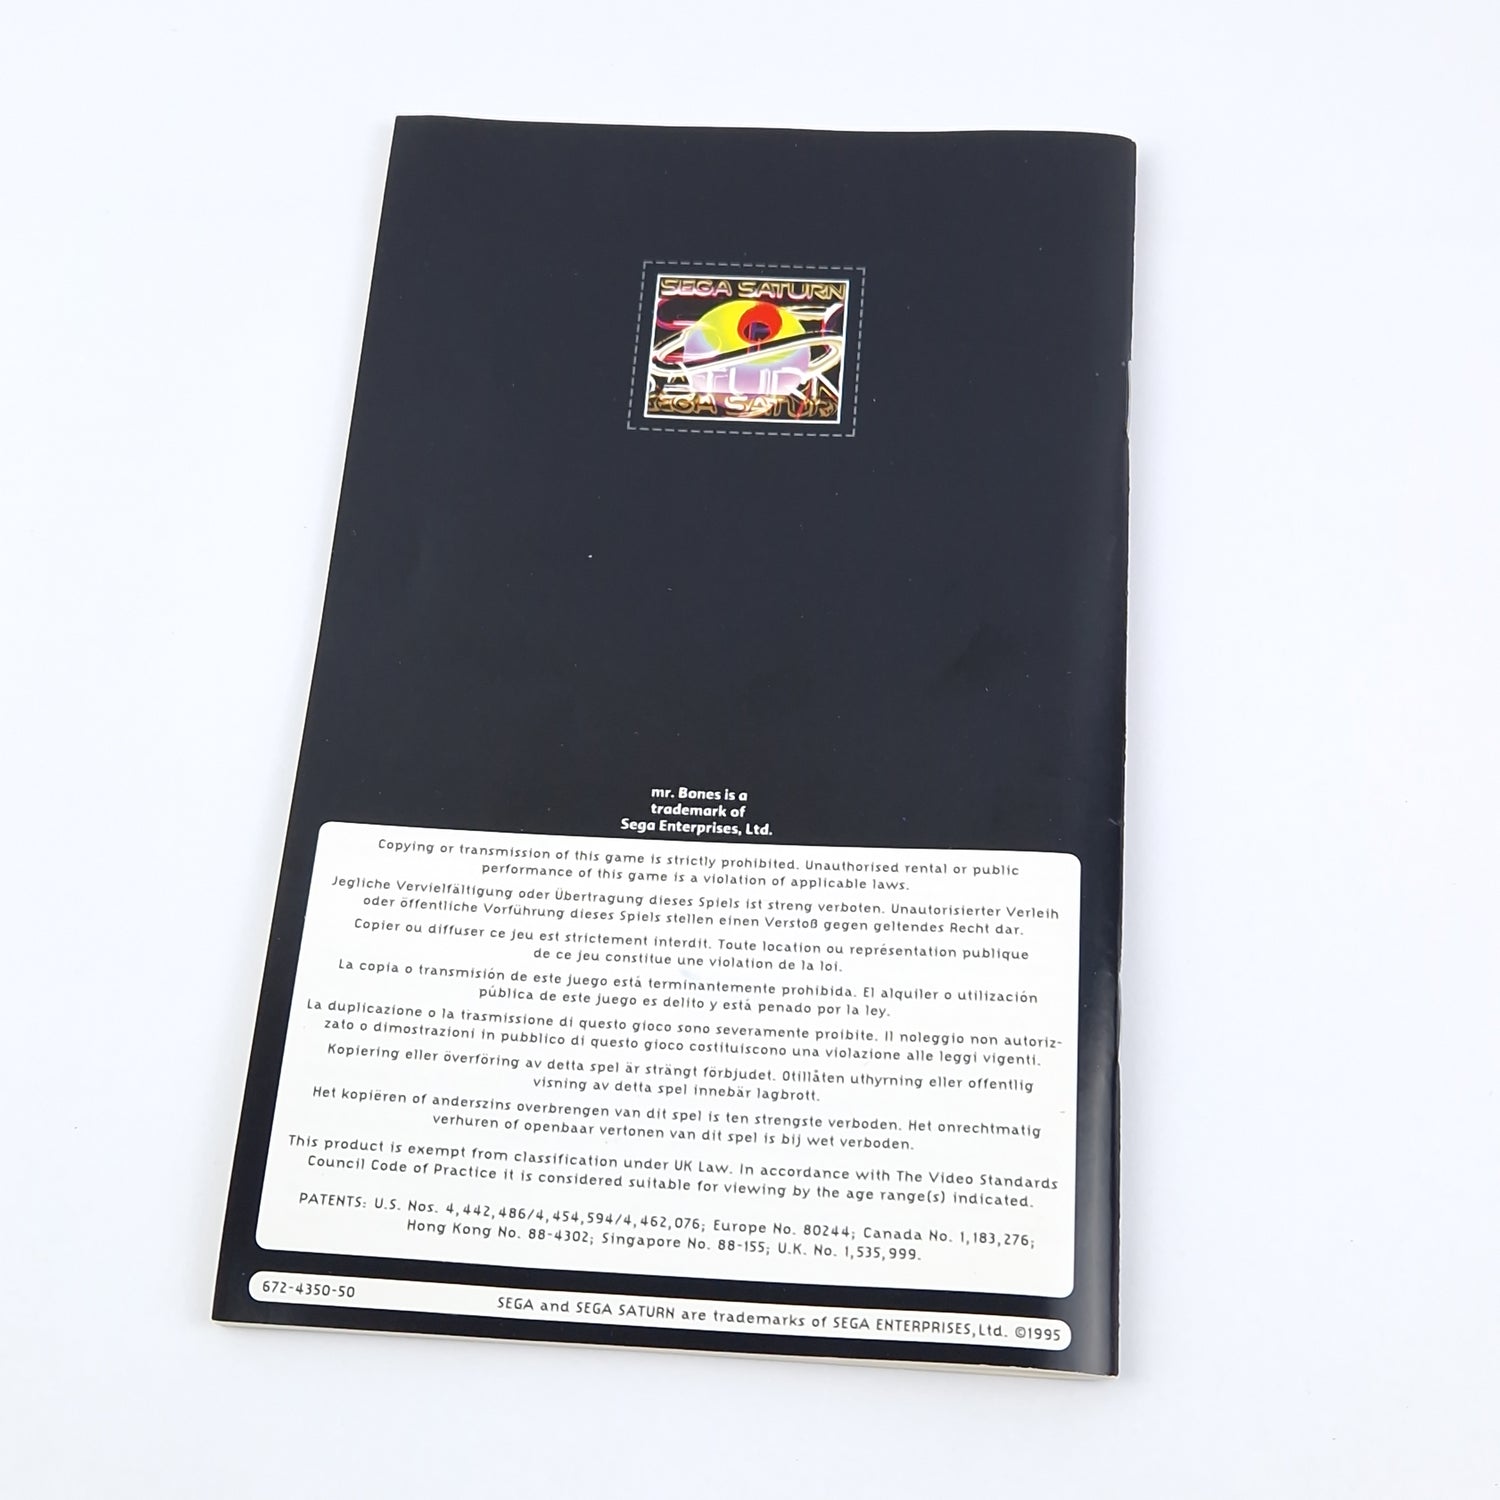 Sega Saturn Game: MR. Bones - OVP Instructions CD Disk 1 & 2 | PAL Game